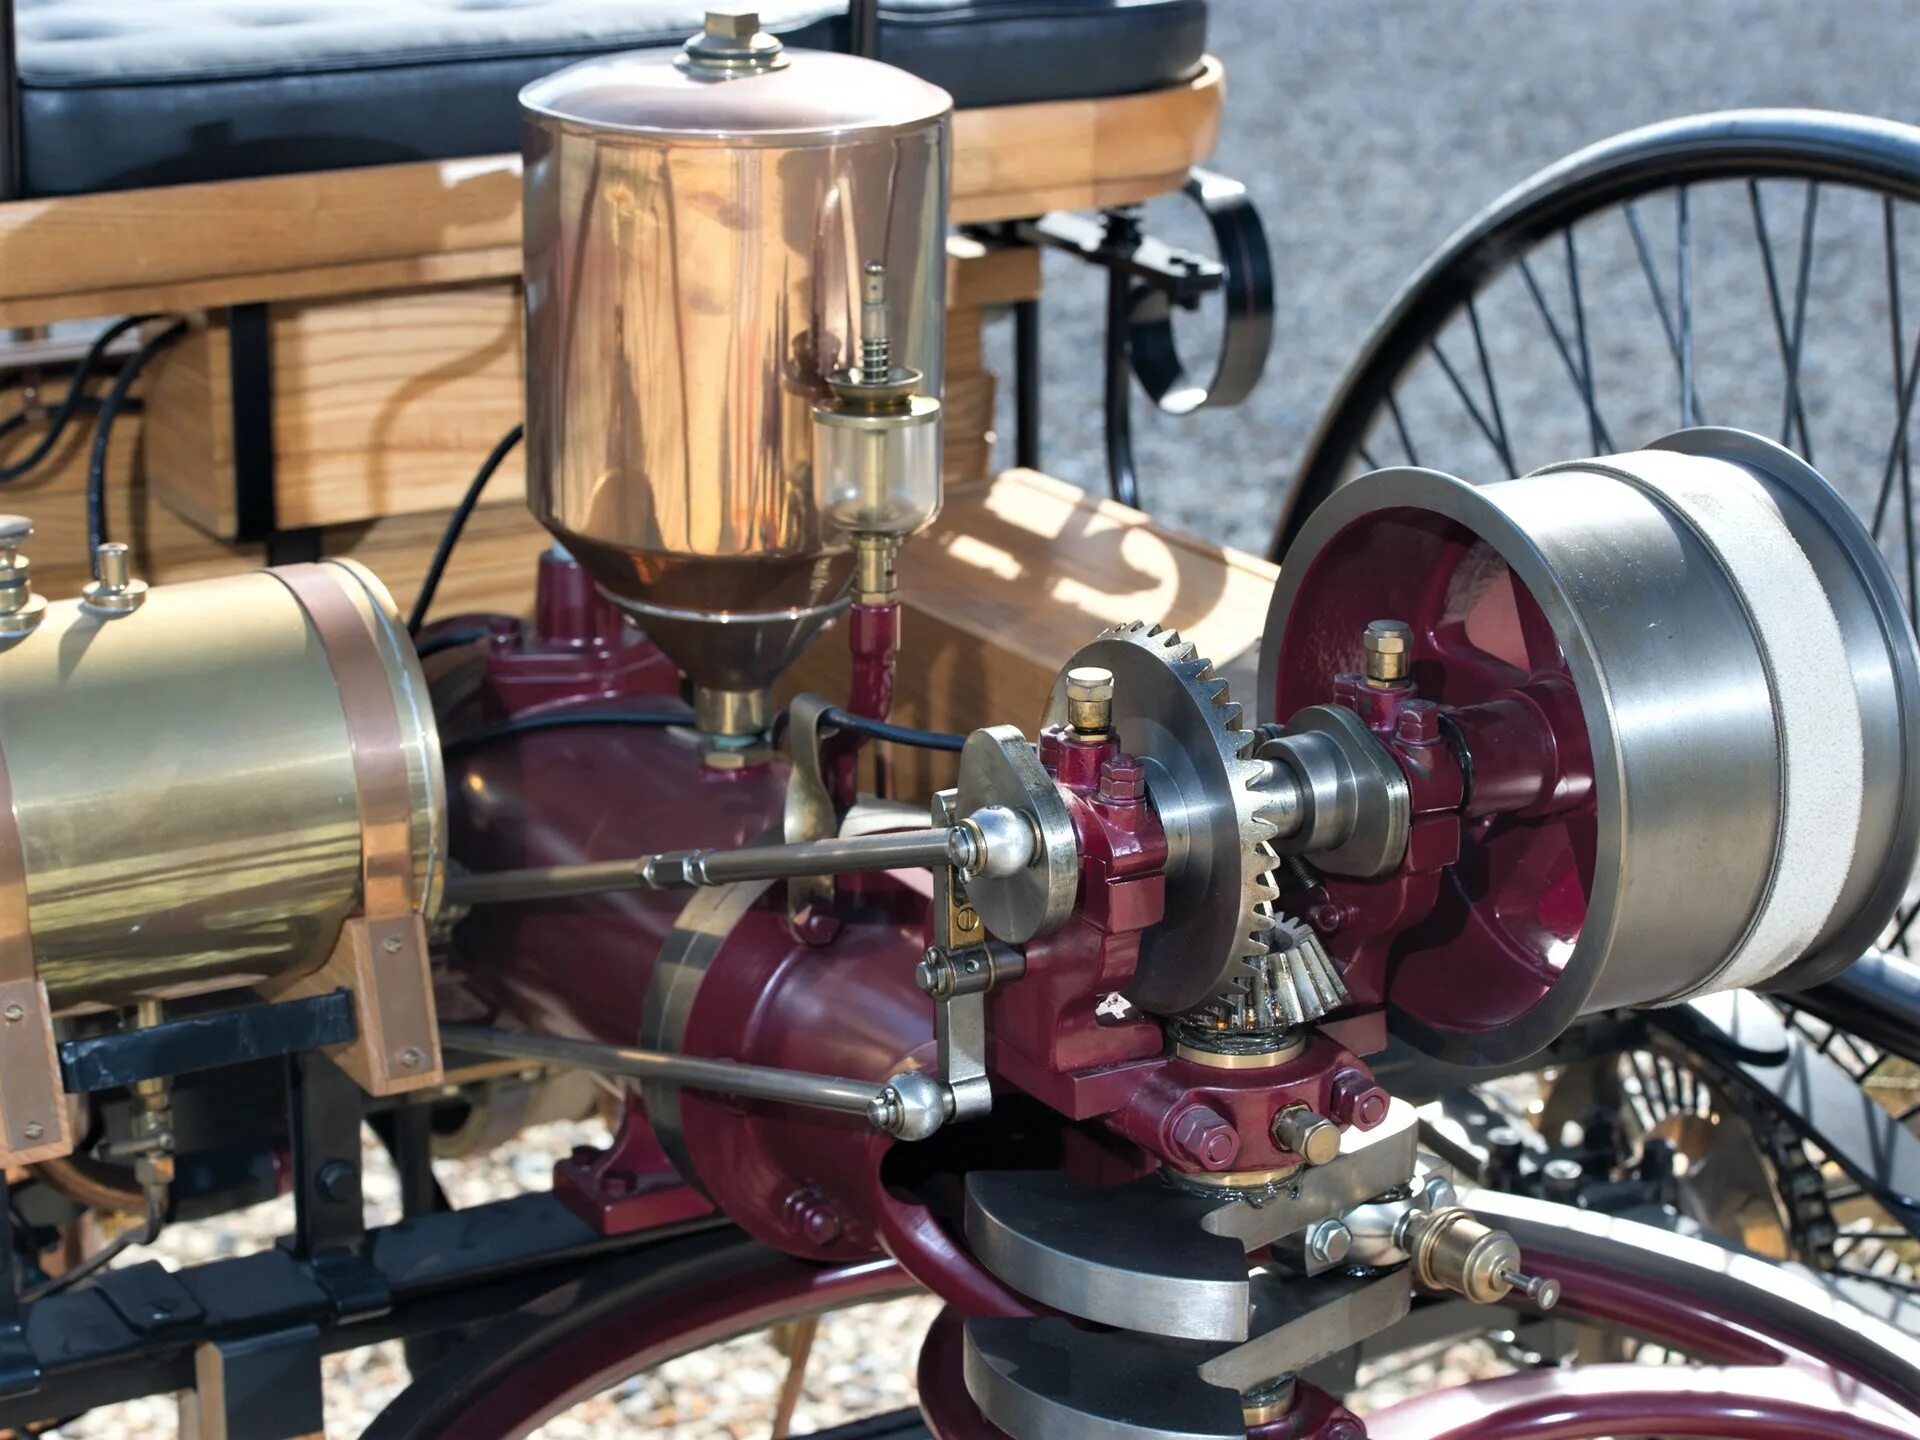 Первый автомобиль внутреннего сгорания. Benz Motorwagen 1886 двигатель. 1886 Benz Patent-Motorwagen мотор. Benz Patent-Motorwagen двигатель.